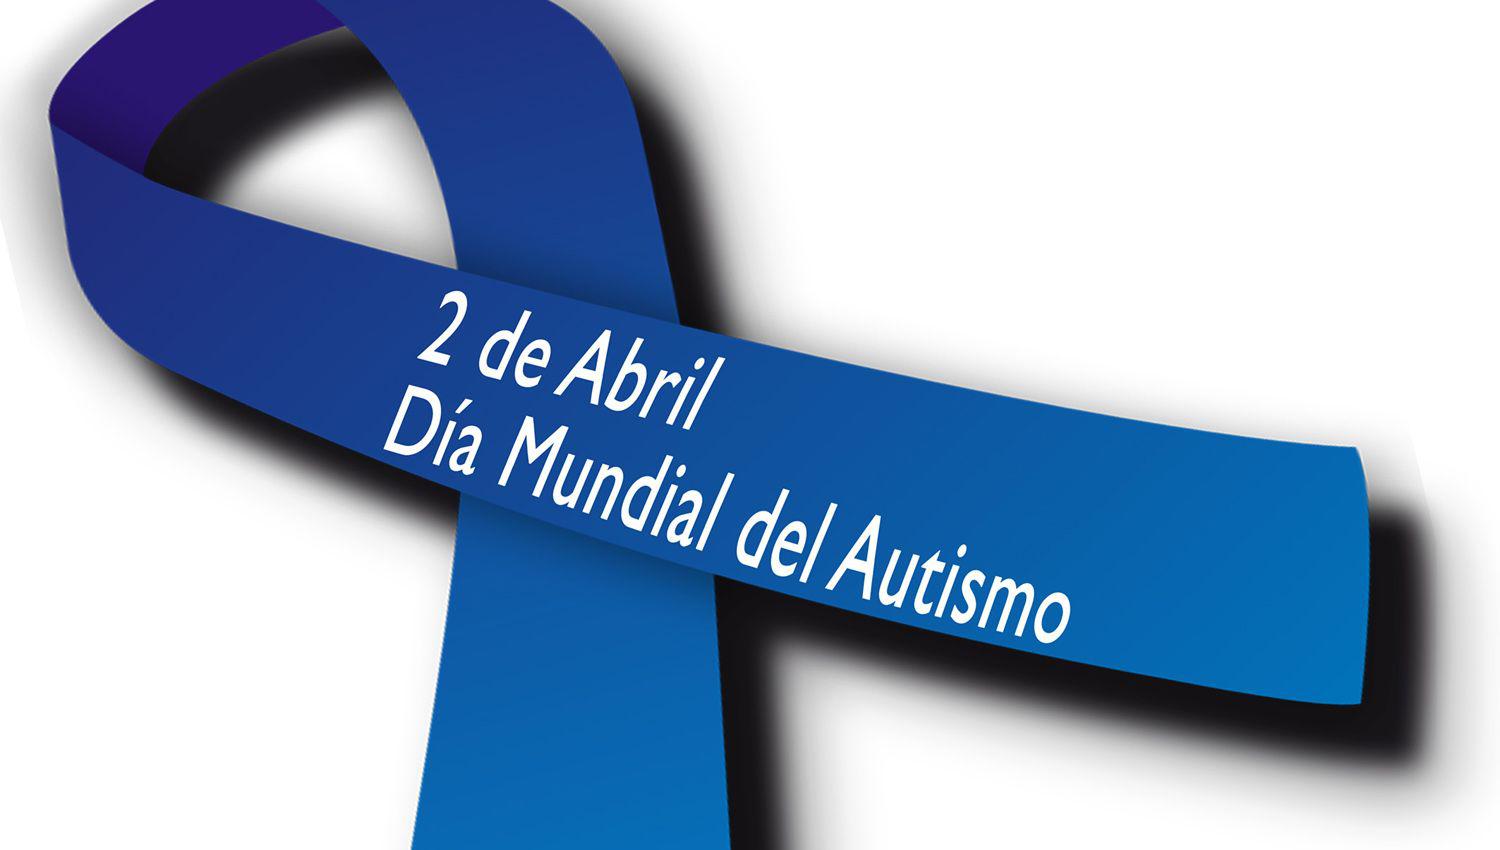 Invitan a portar un lazo azul por el Diacutea Mundial de la Concientizacioacuten del Autismo